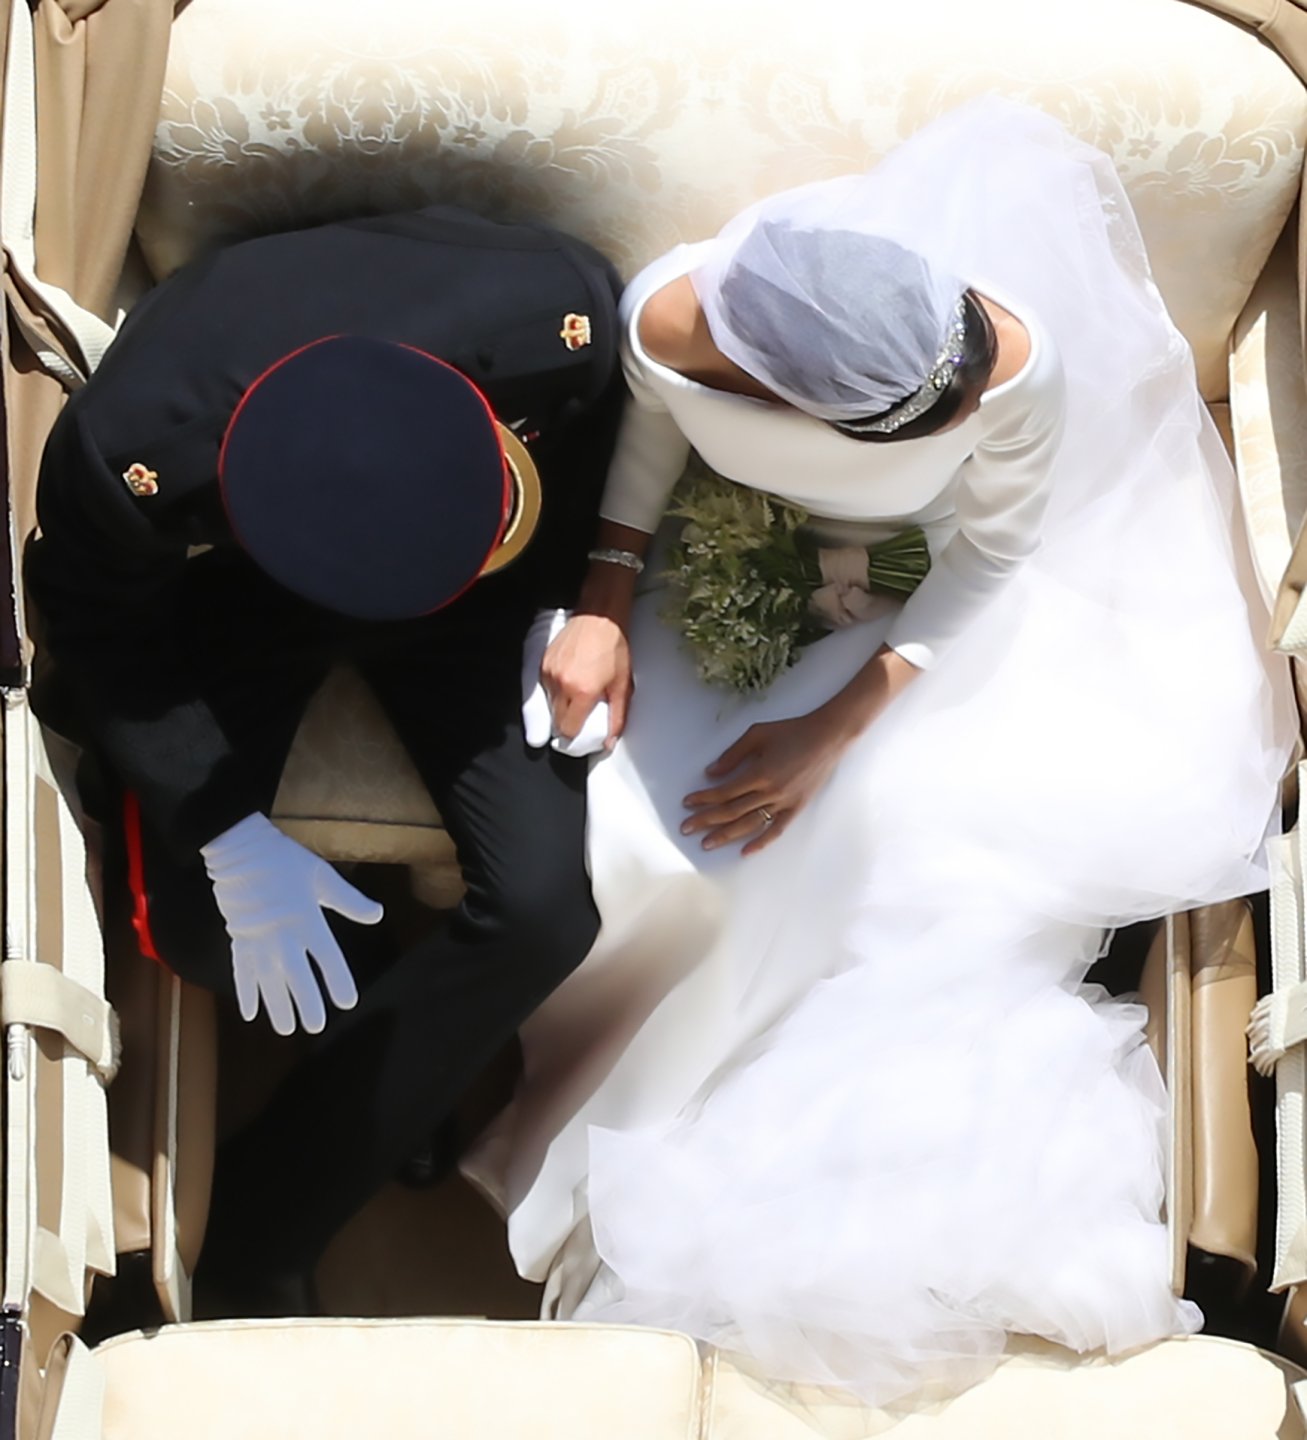 yui-mok-royal-wedding-top-100-photos-2018.jpg